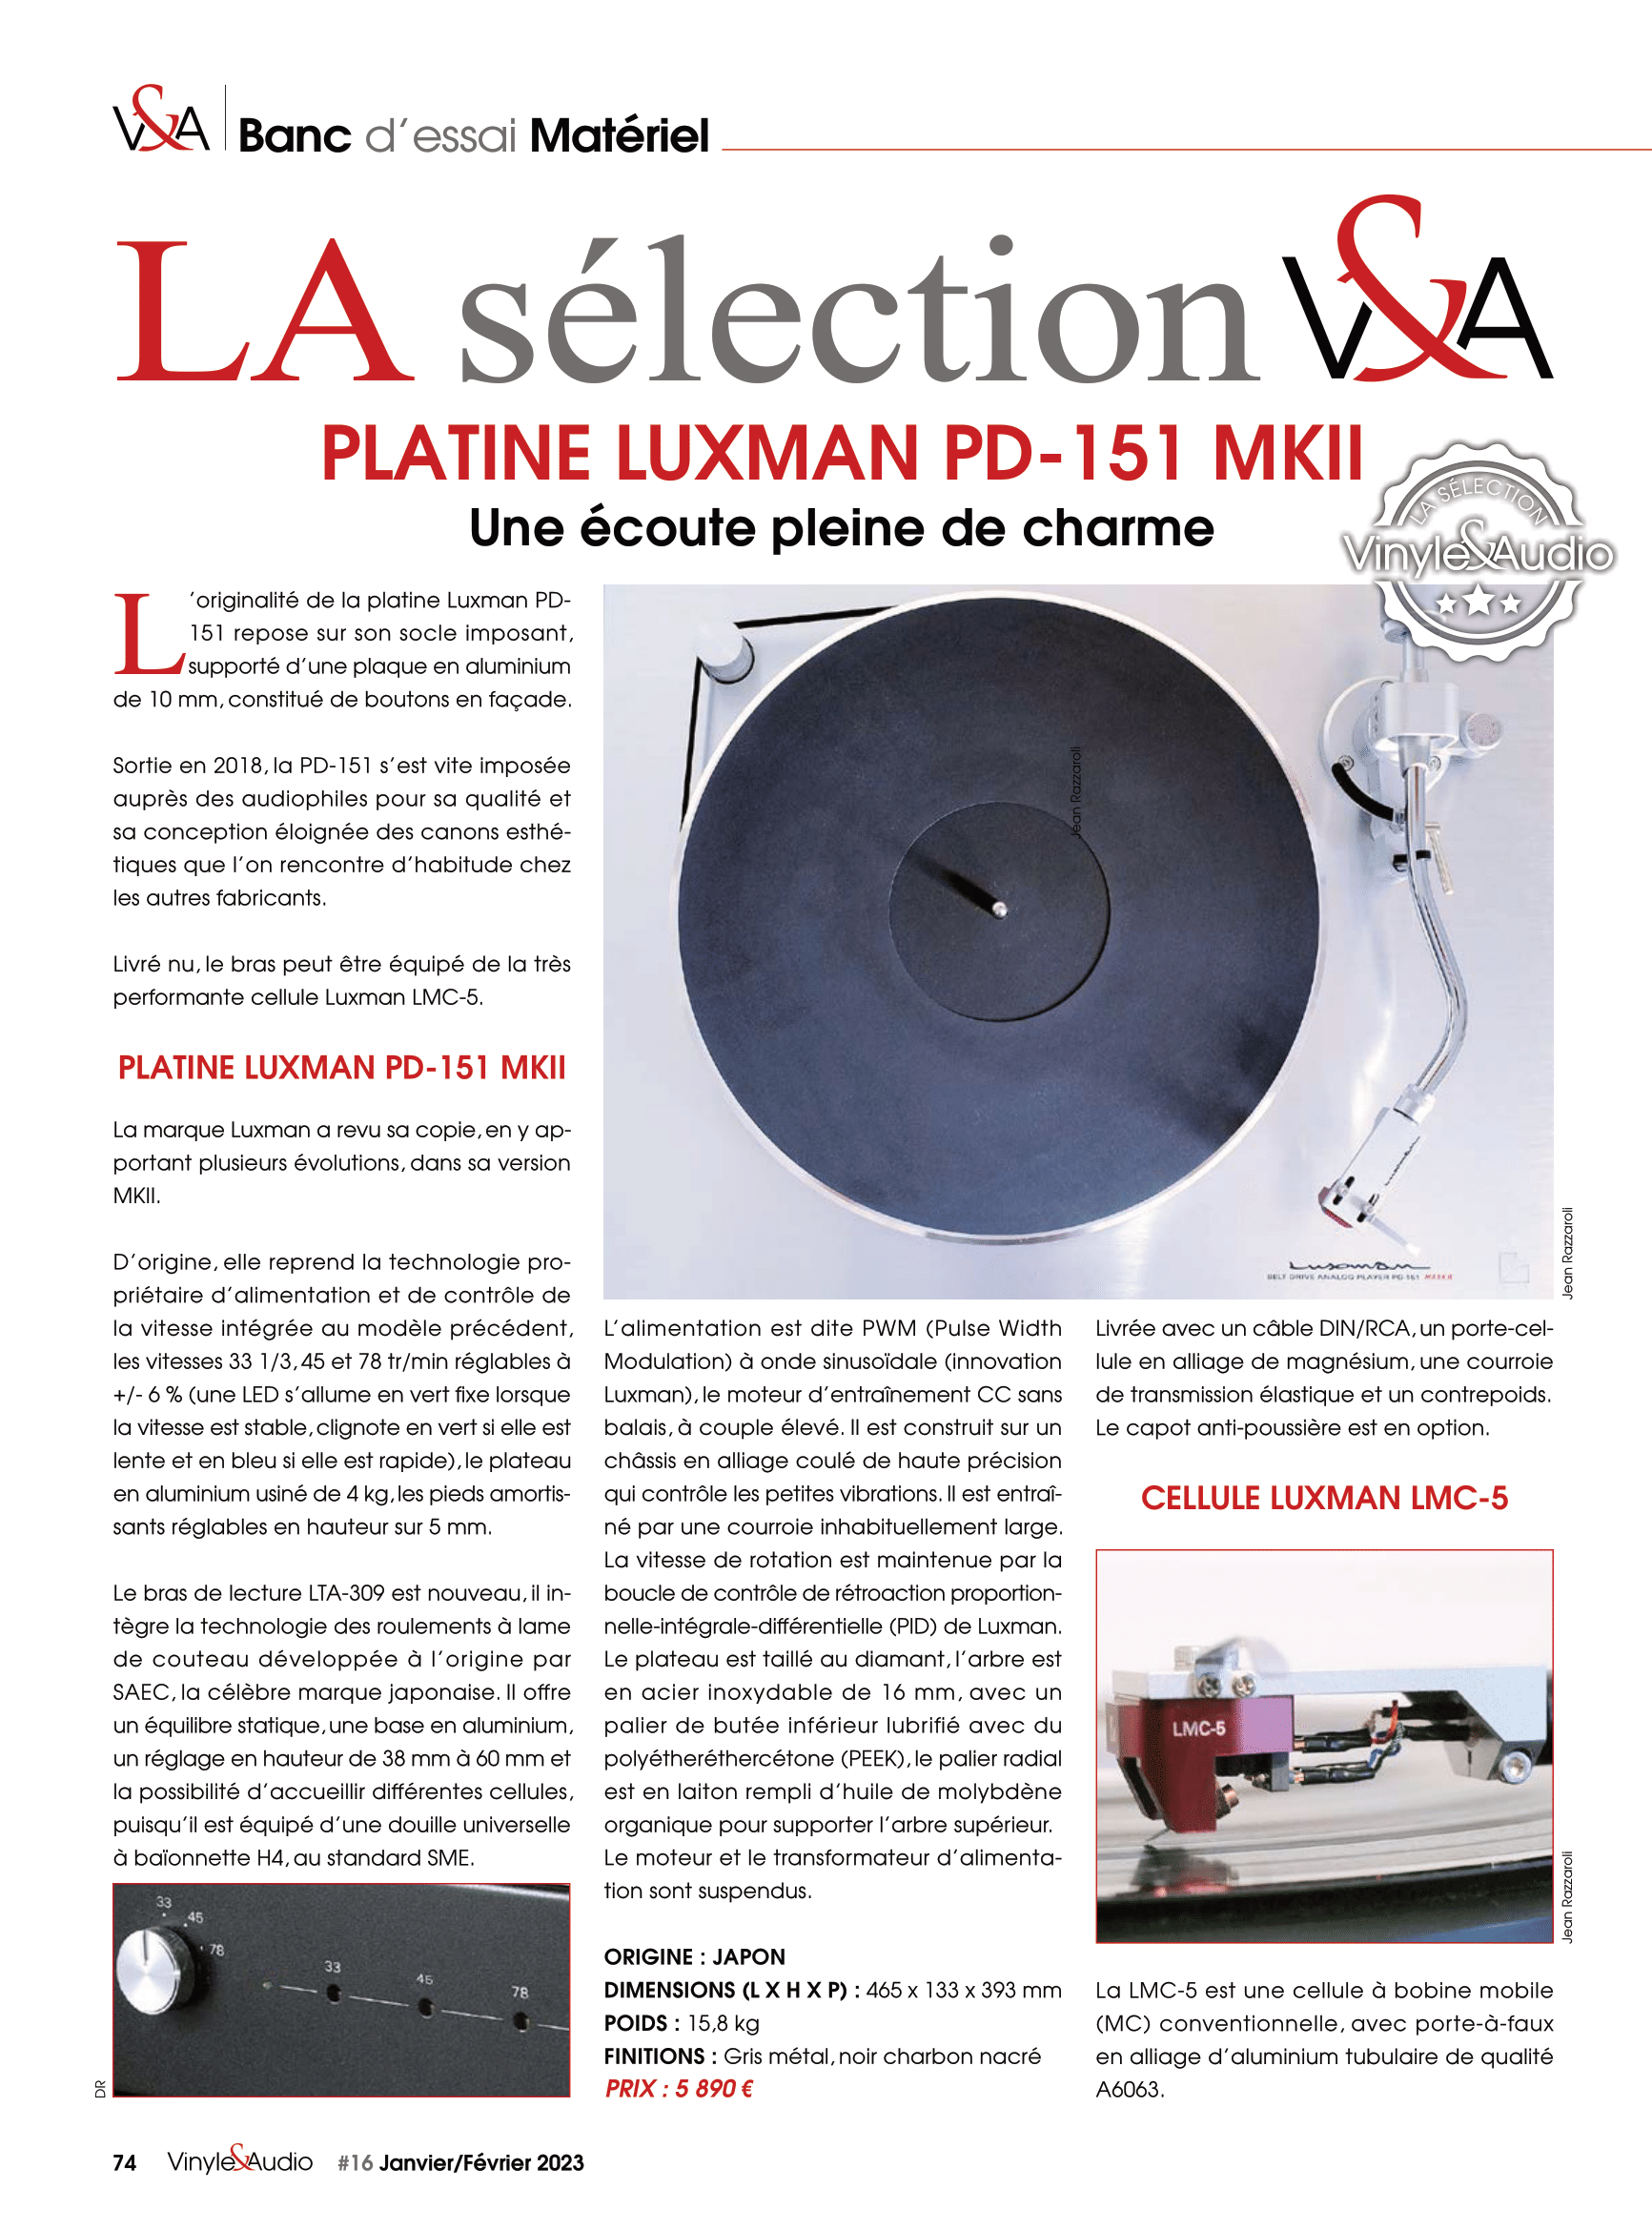 Vinyle & Audio n°16 : banc d’essai matériel avec la platine Luxman PD-151 MKII